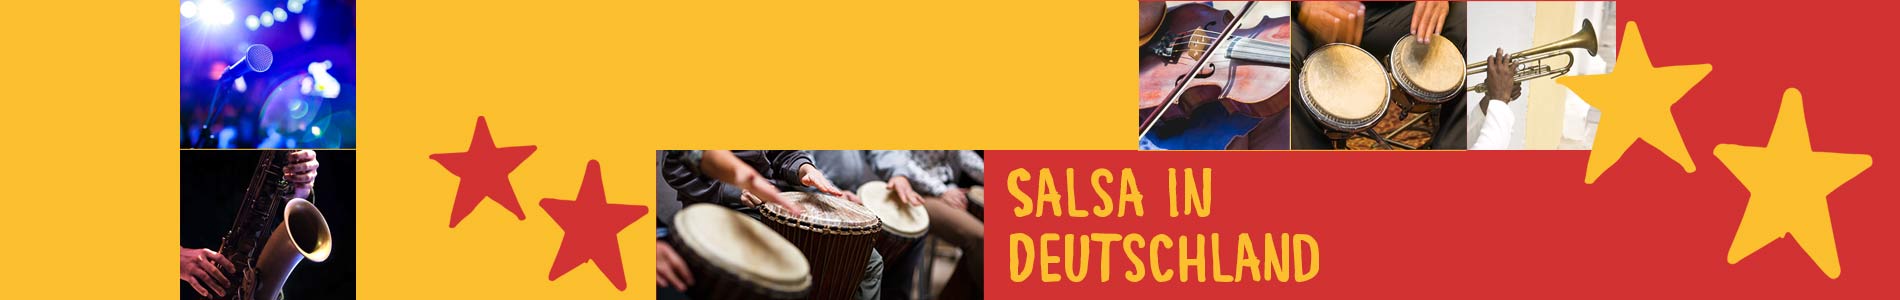 Salsa in Breddin – Salsa lernen und tanzen, Tanzkurse, Partys, Veranstaltungen